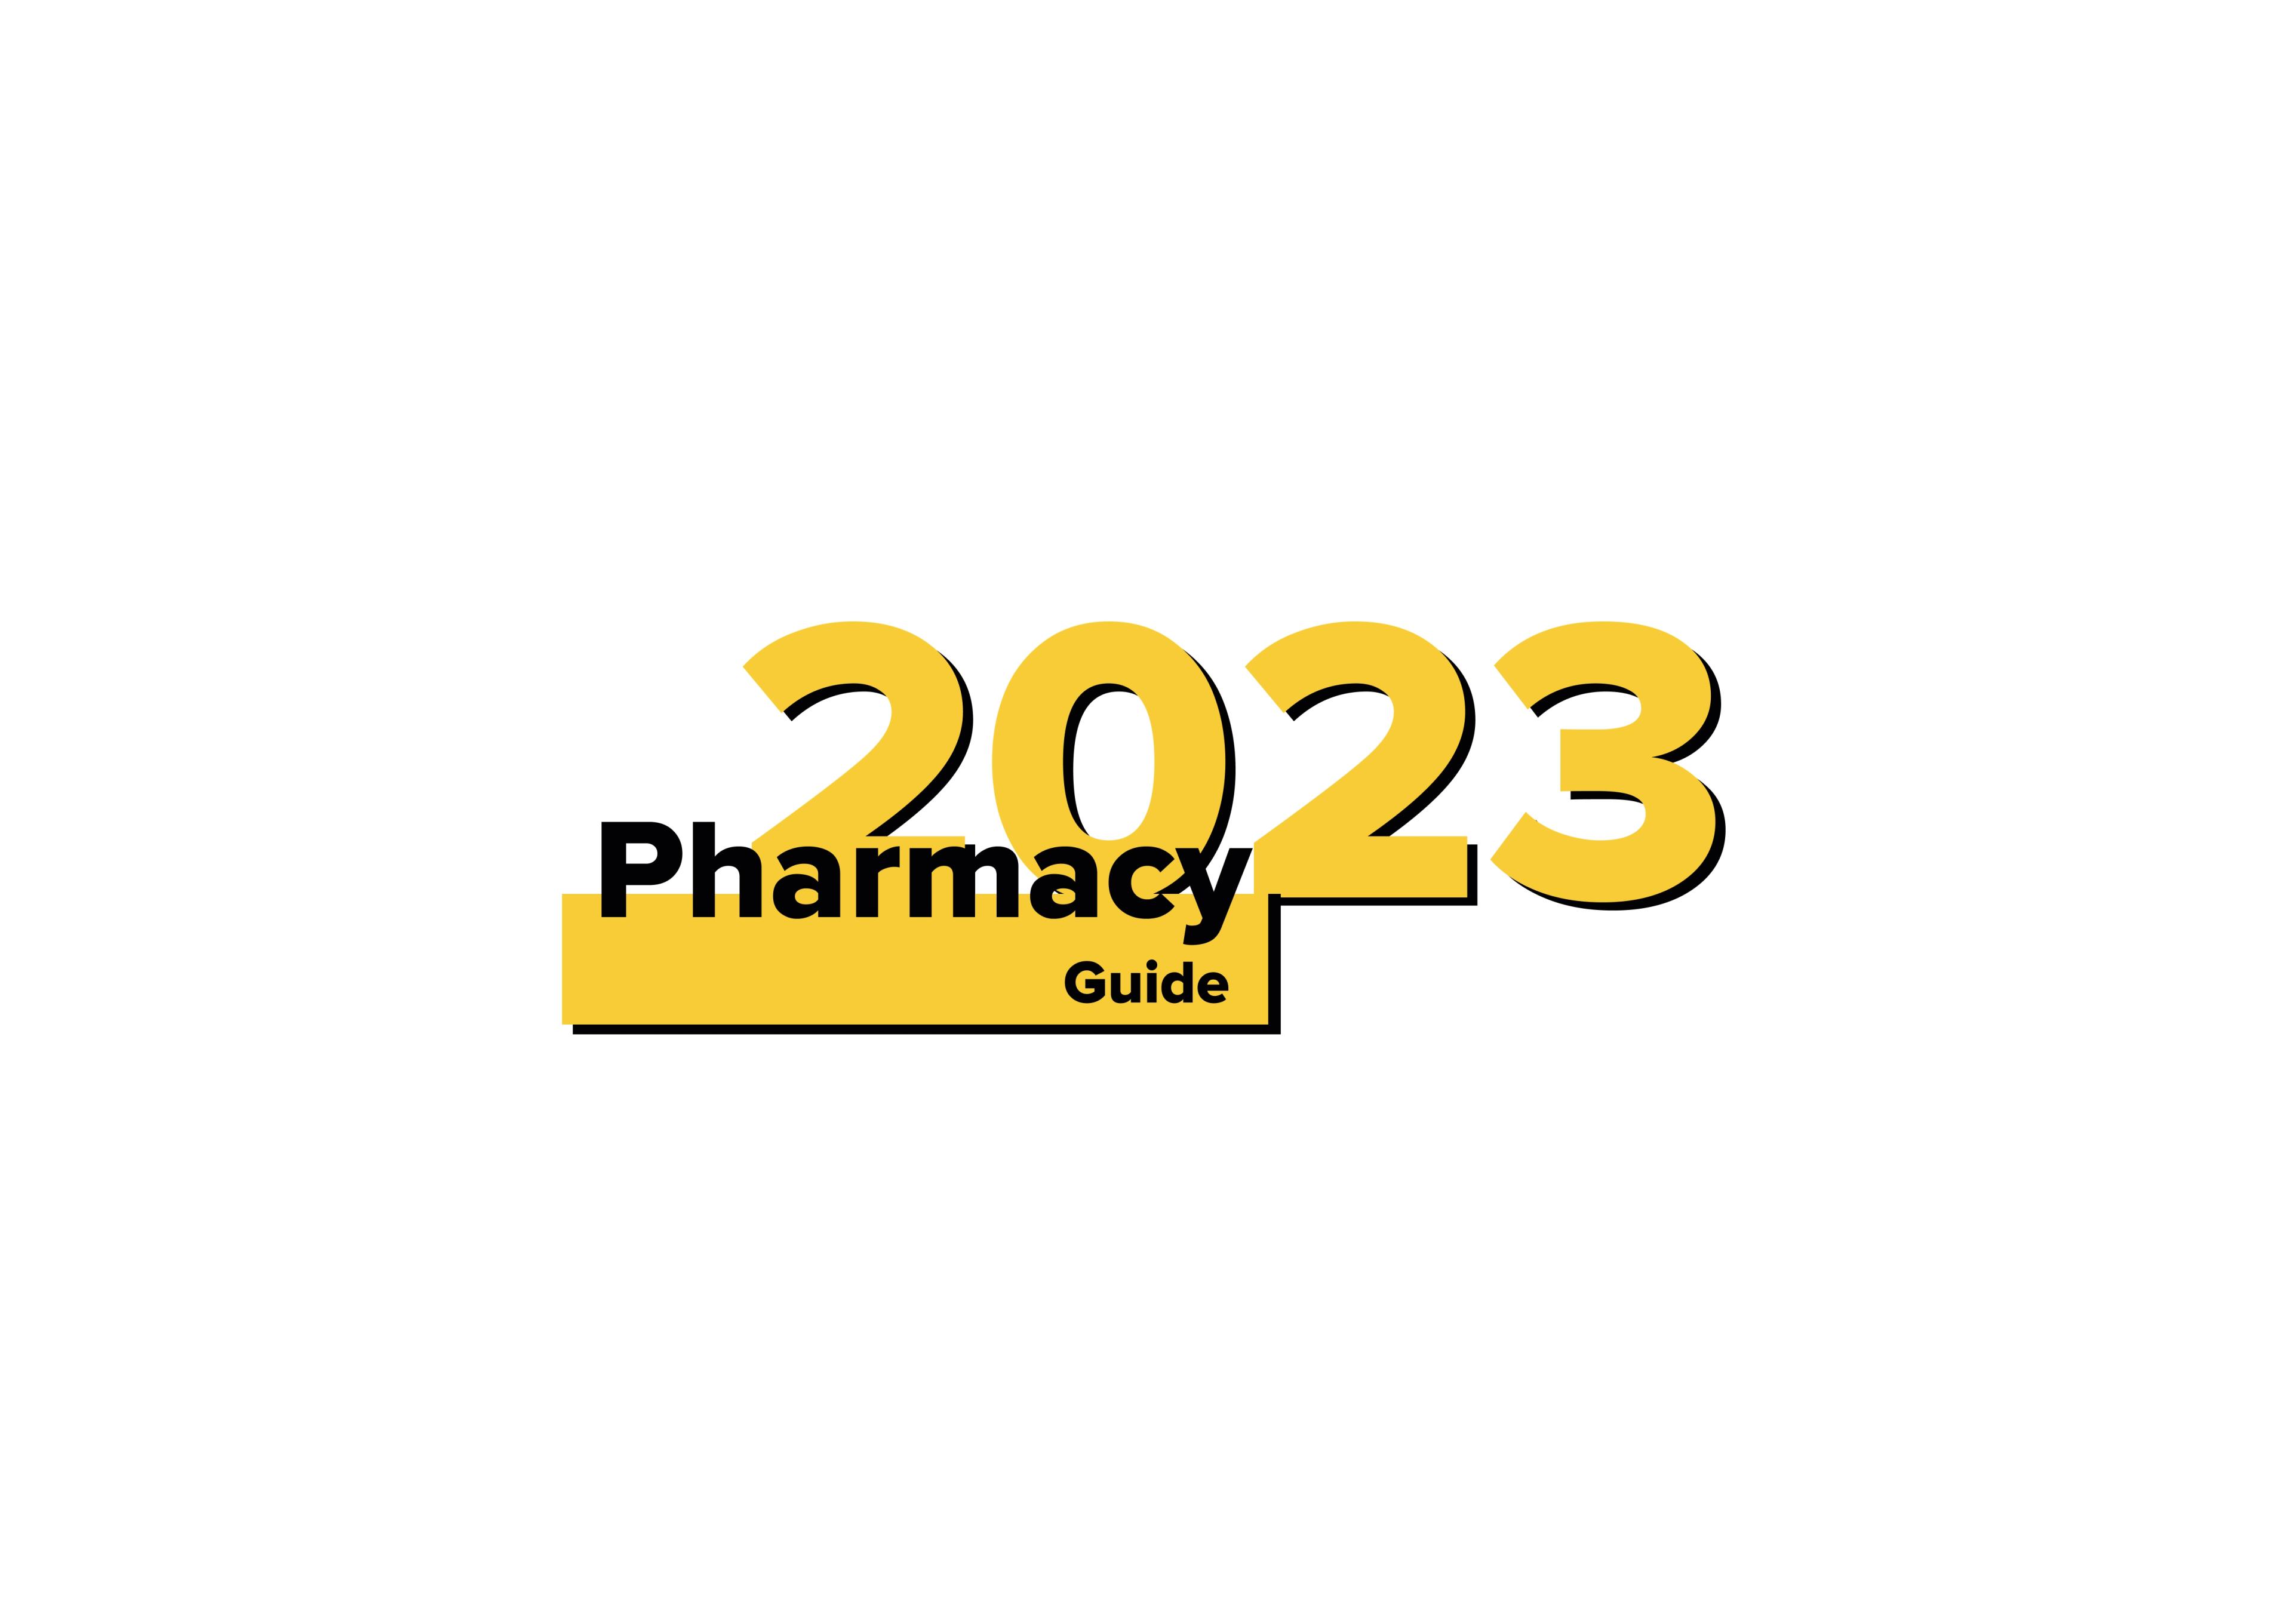 Online Pharmacy Application Development Guide